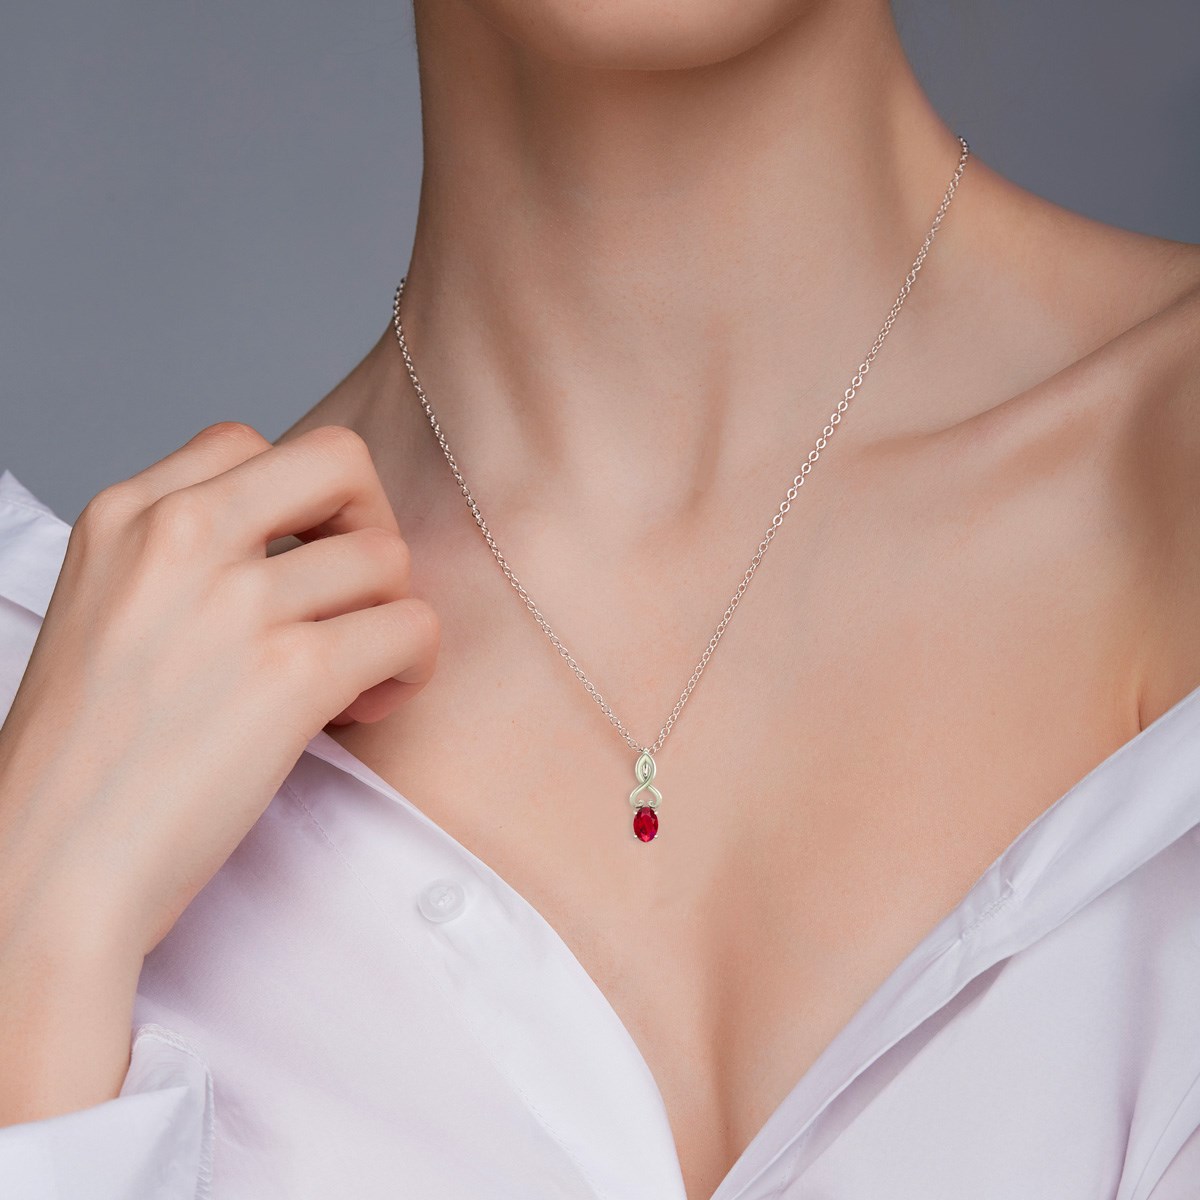 Collier Pendentif Or Blanc Rubis - Bijou de Luxe pour un Anniversaire Inoubliable | Aden - vue 4